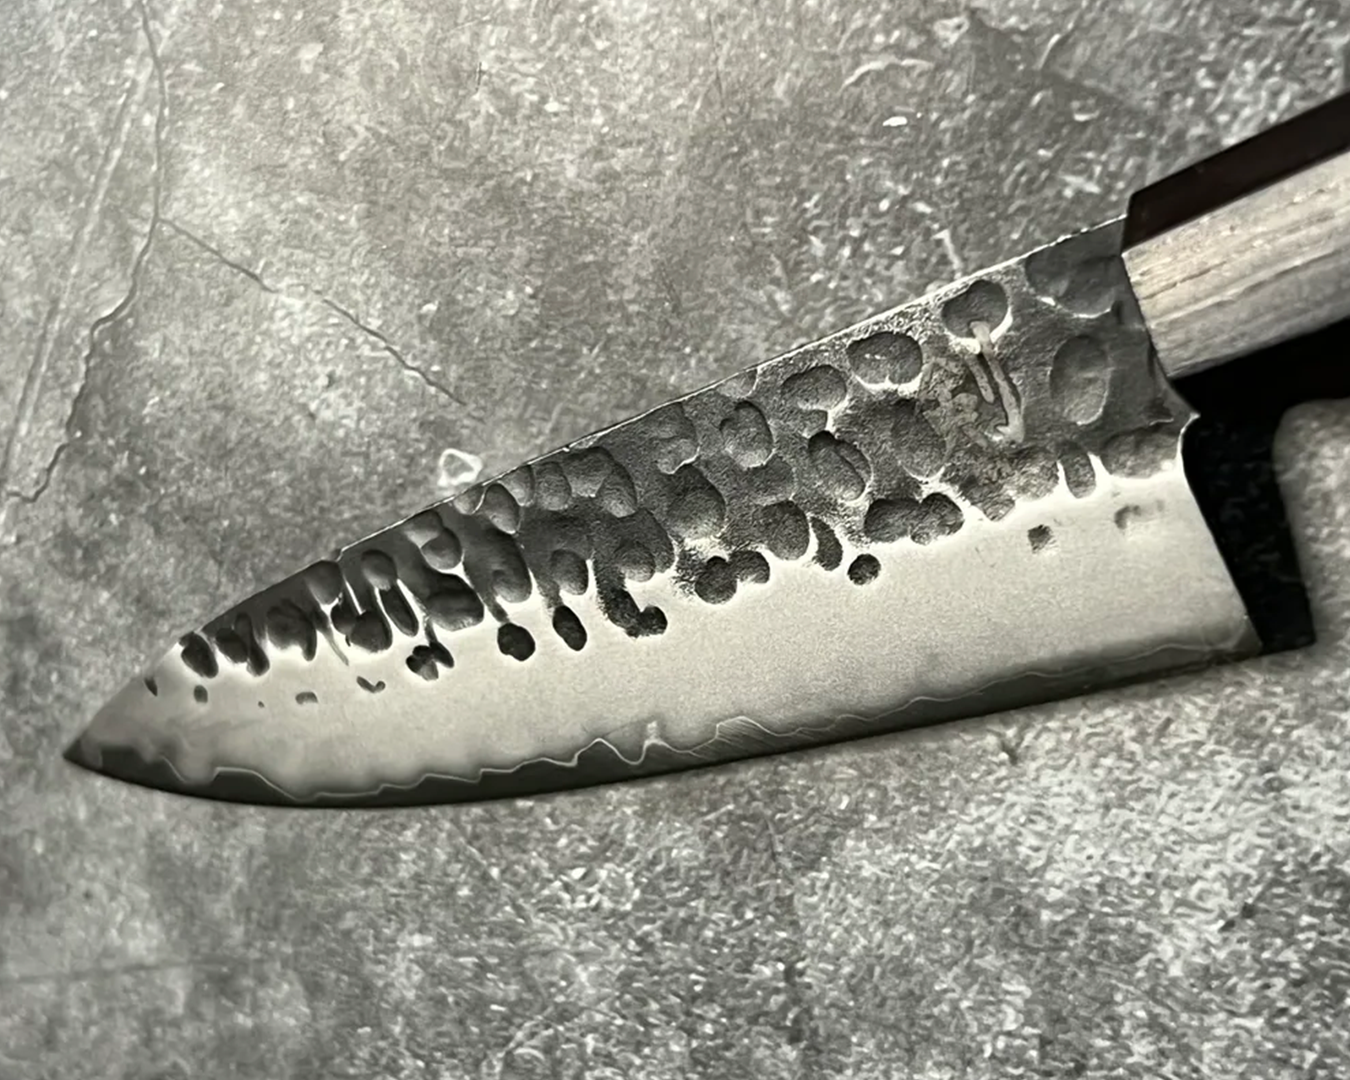 6" Petty Knife